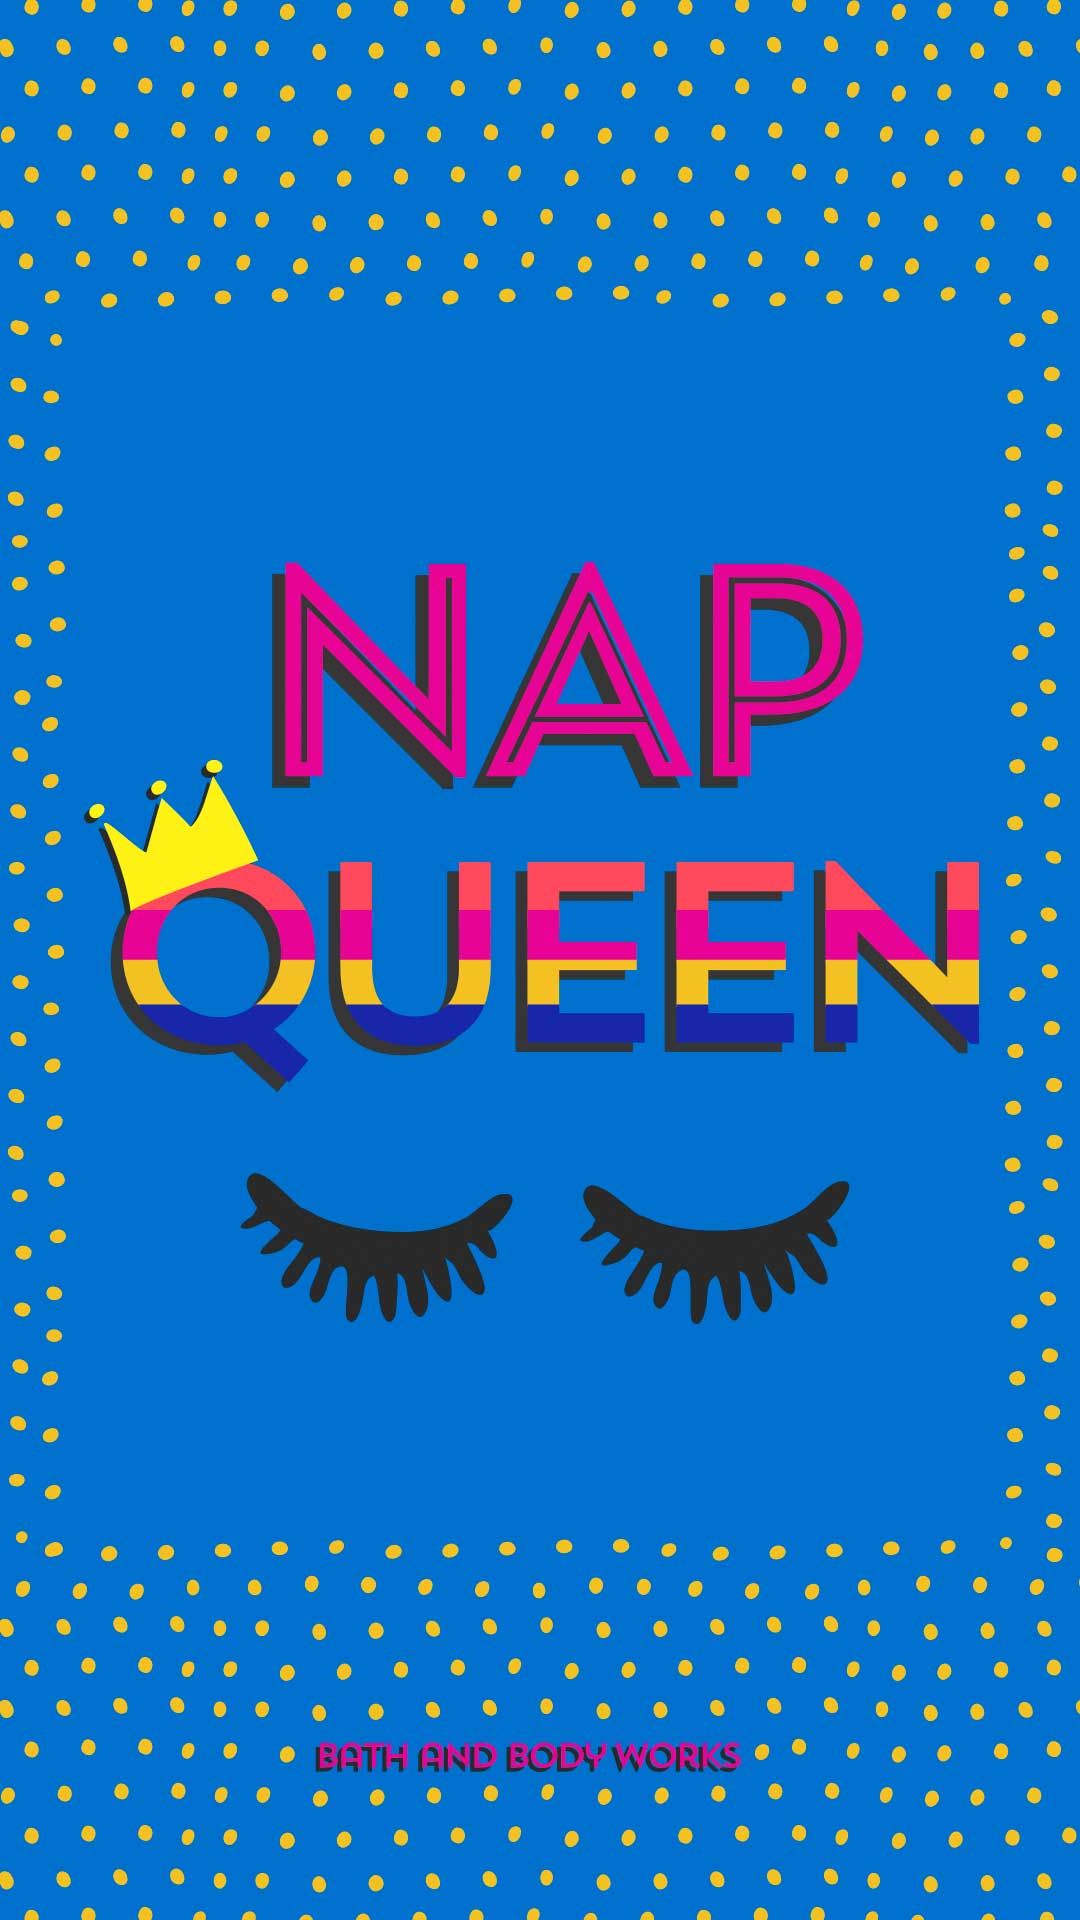 Nap Queen iPhone Wallpaper Bath Body Works Wallpapers